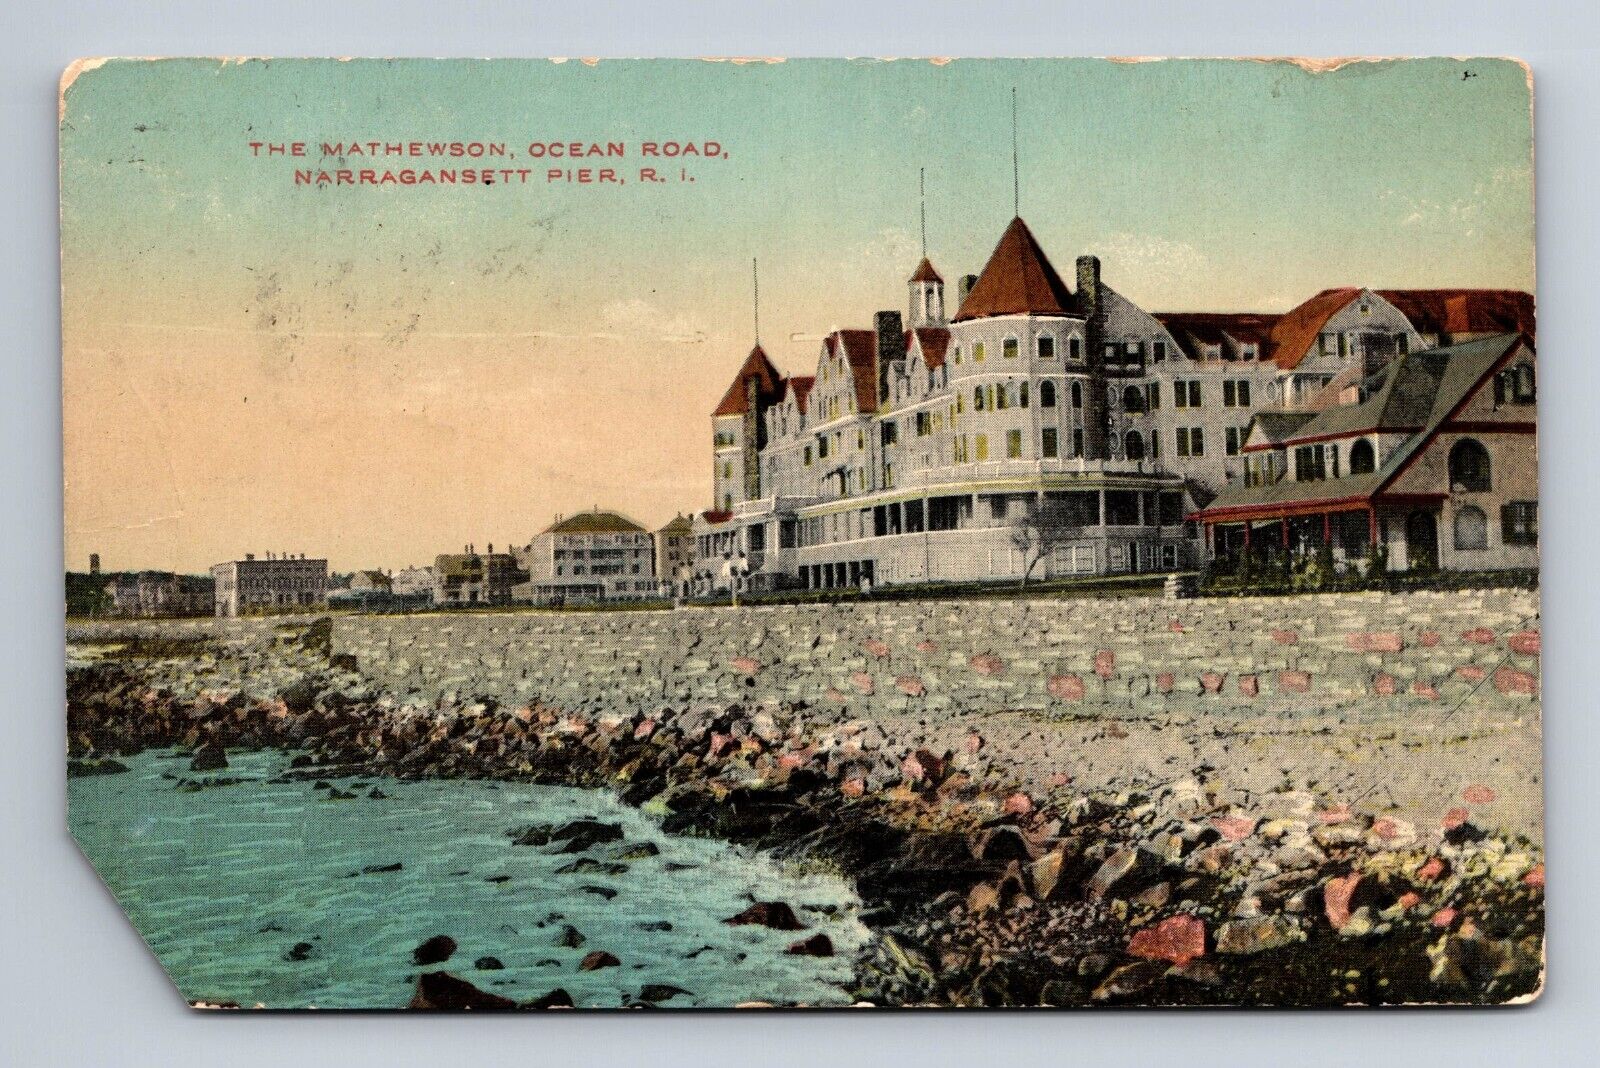 The Mathewson Ocean Road Narragansett Pier Rhode Island Postcard c1912